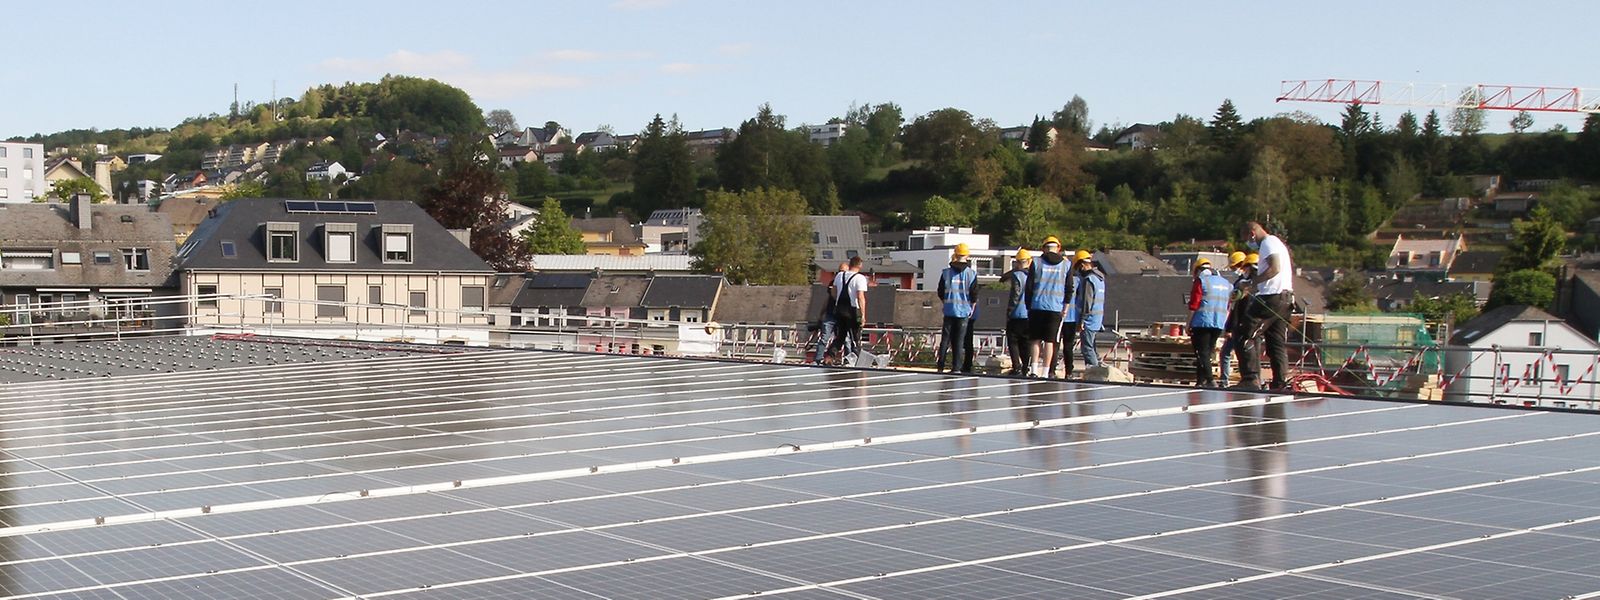 Les lycéens ont trouvé le site parfait pour mettre en pratique leur enseignement sur les techniques d'exploitation des énergies renouvelables.